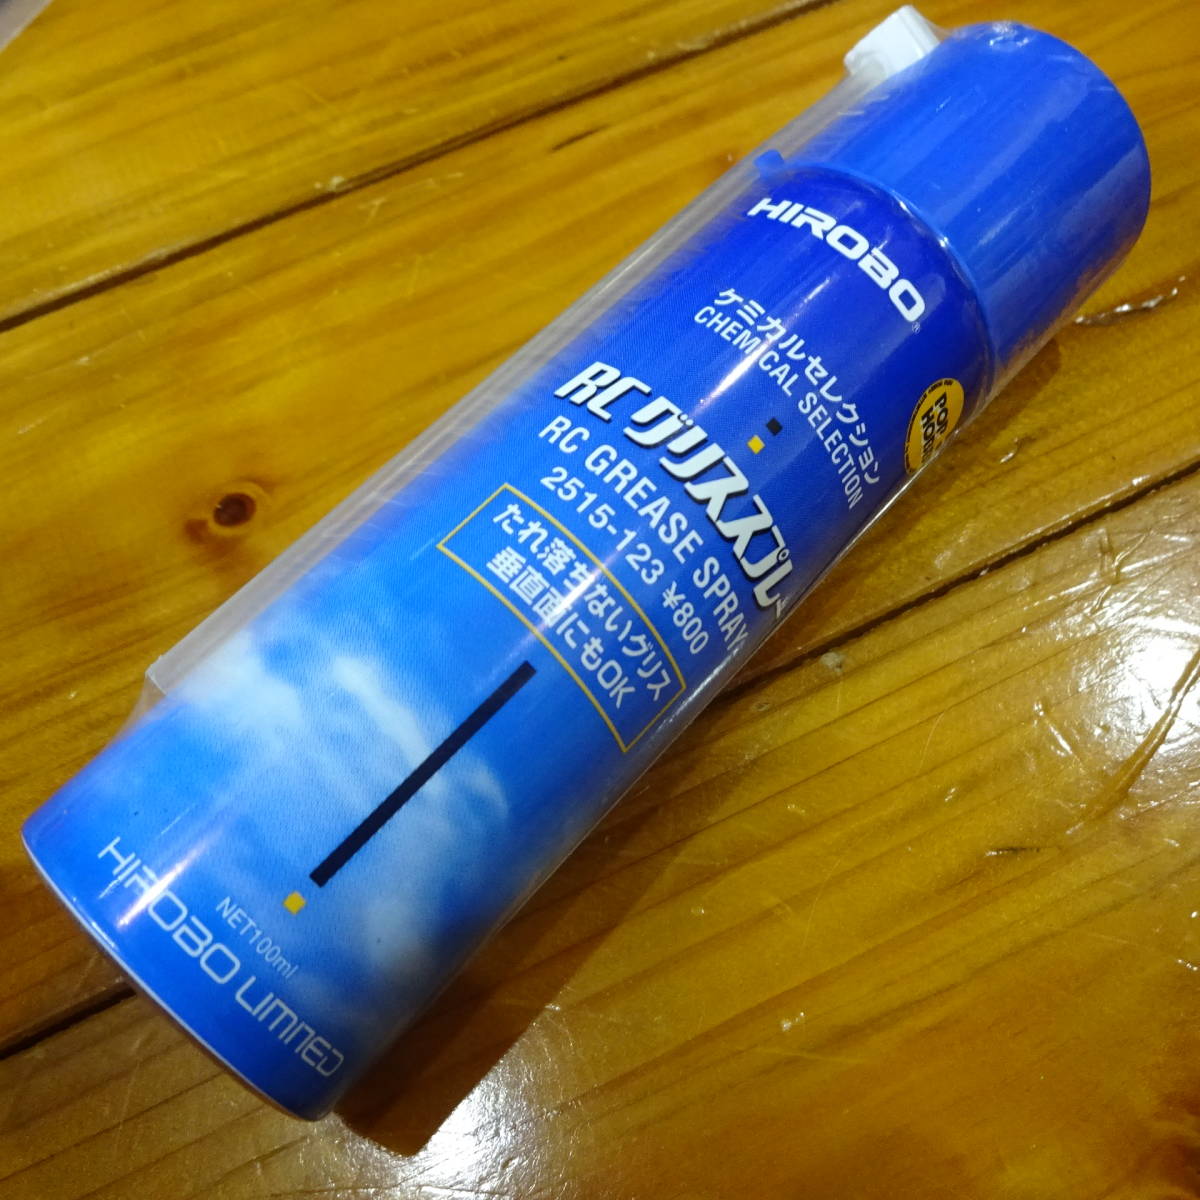  Hirobo 2515-123 grease spray 